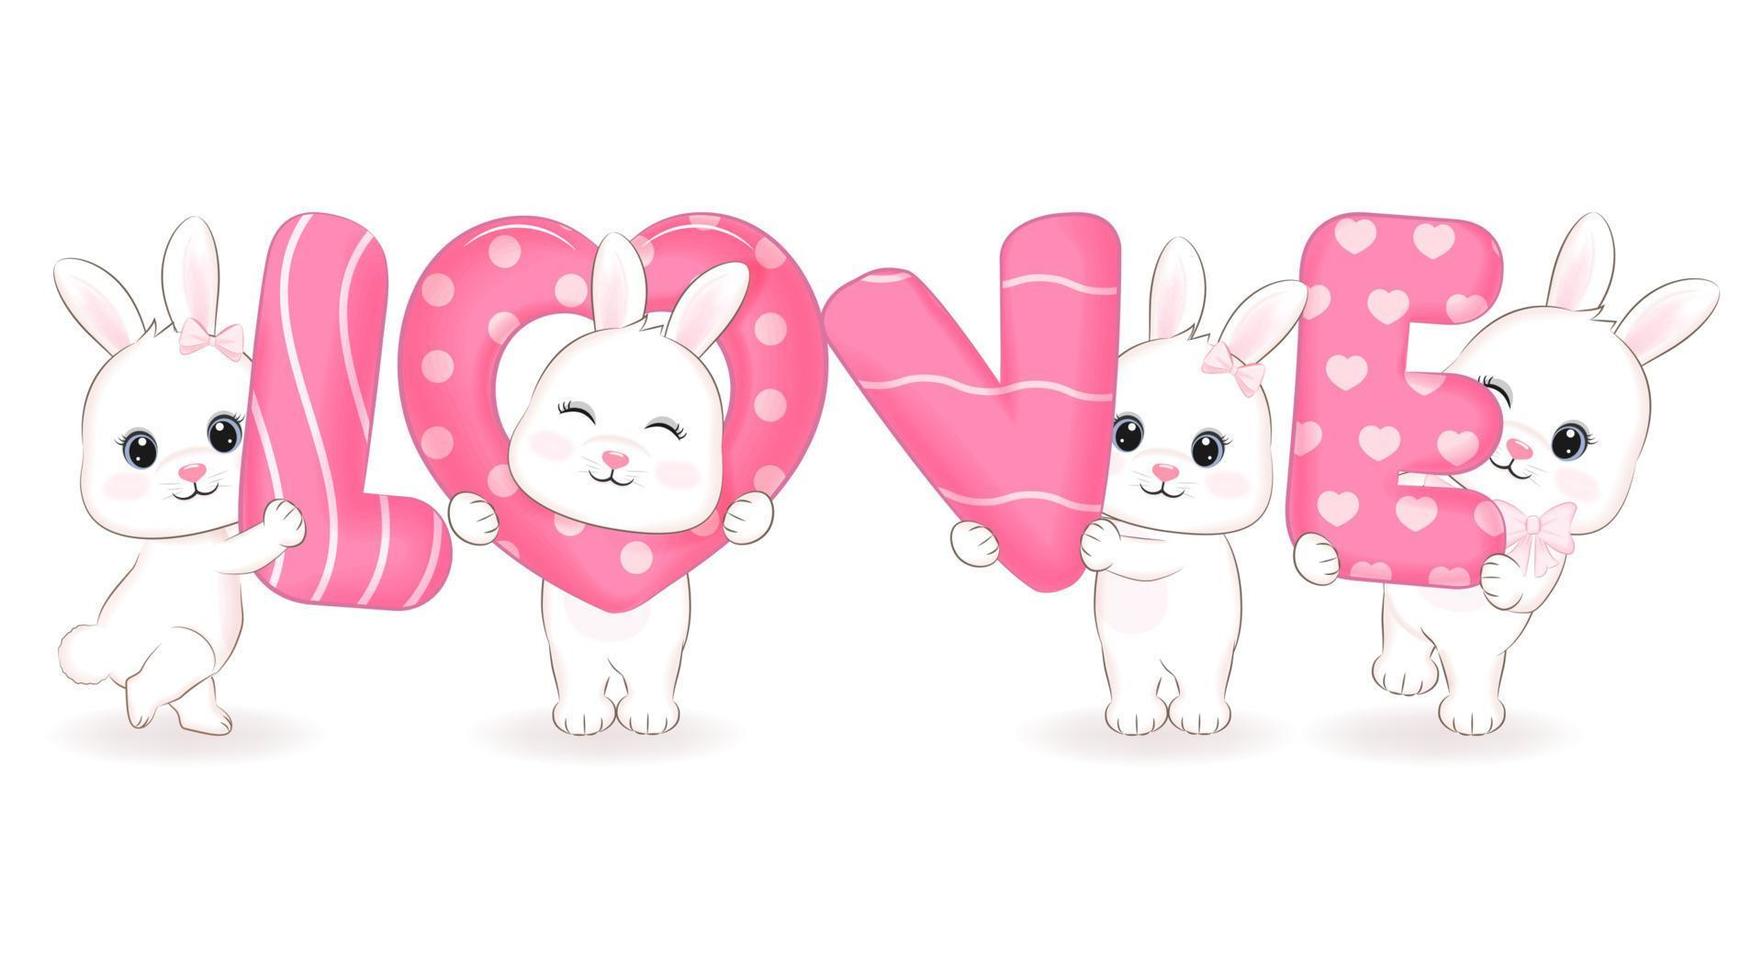 mignon petit lapin avec amour de l'alphabet, illustration de dessin animé vecteur